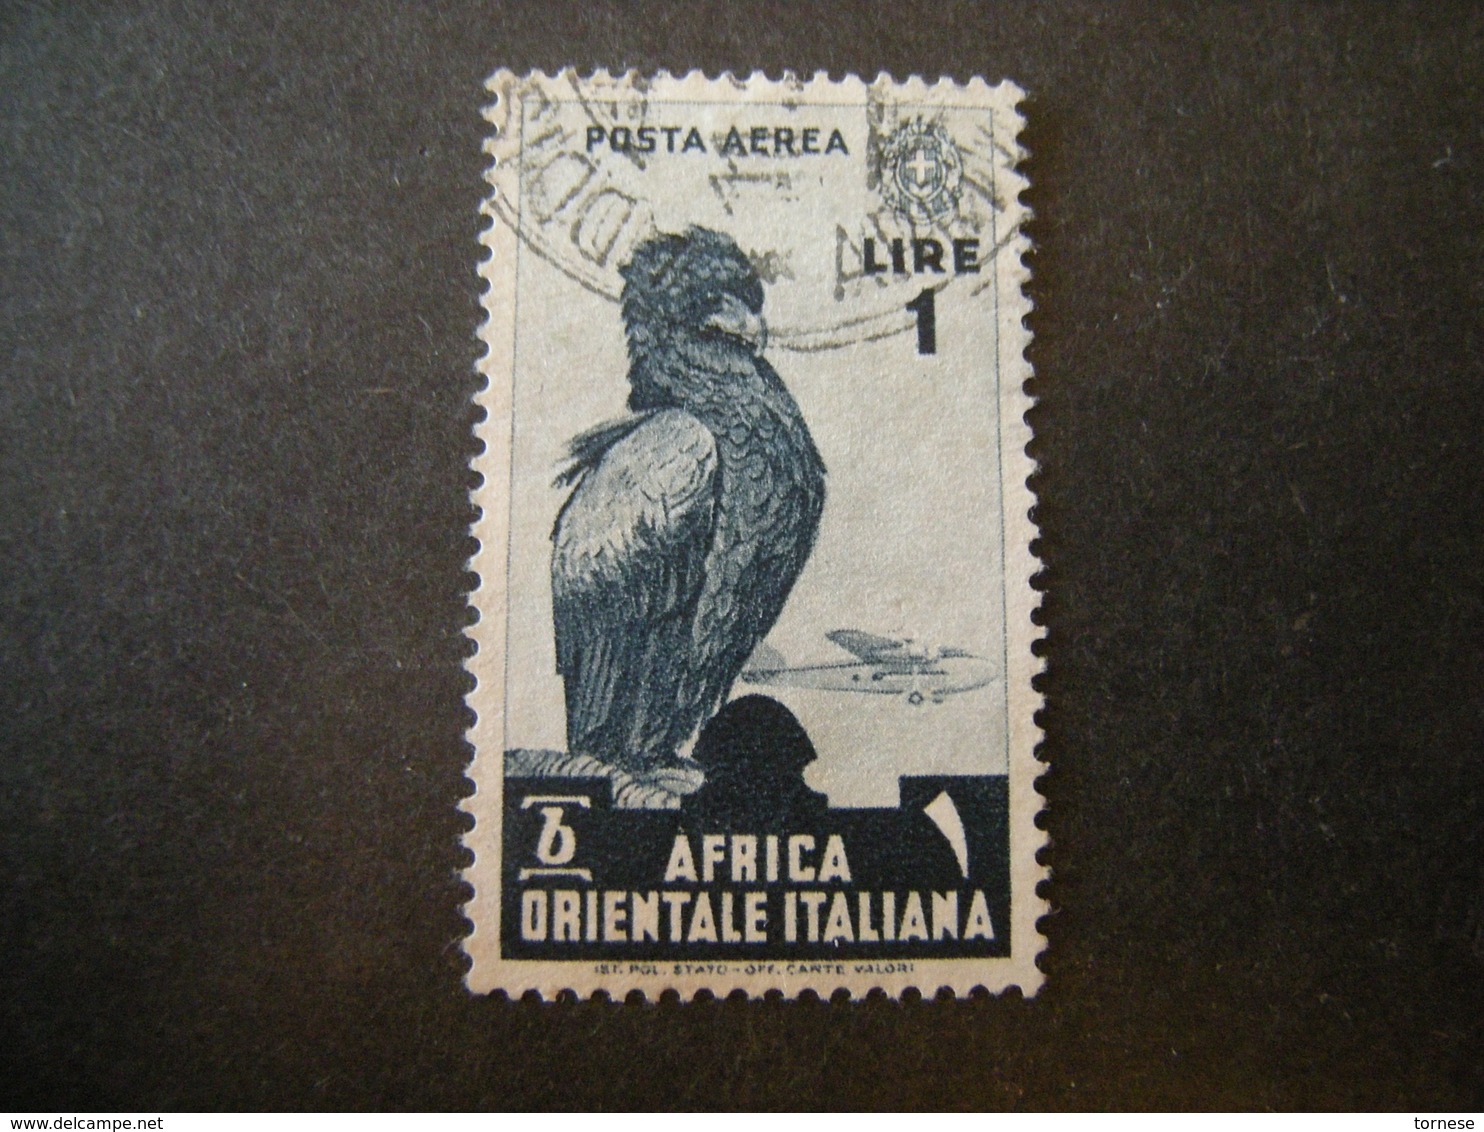 AFRICA ORIENT. ITALIANA - 1938, Posta Aerea, Sass N. A5, Lire 1, Usato - Africa Orientale Italiana